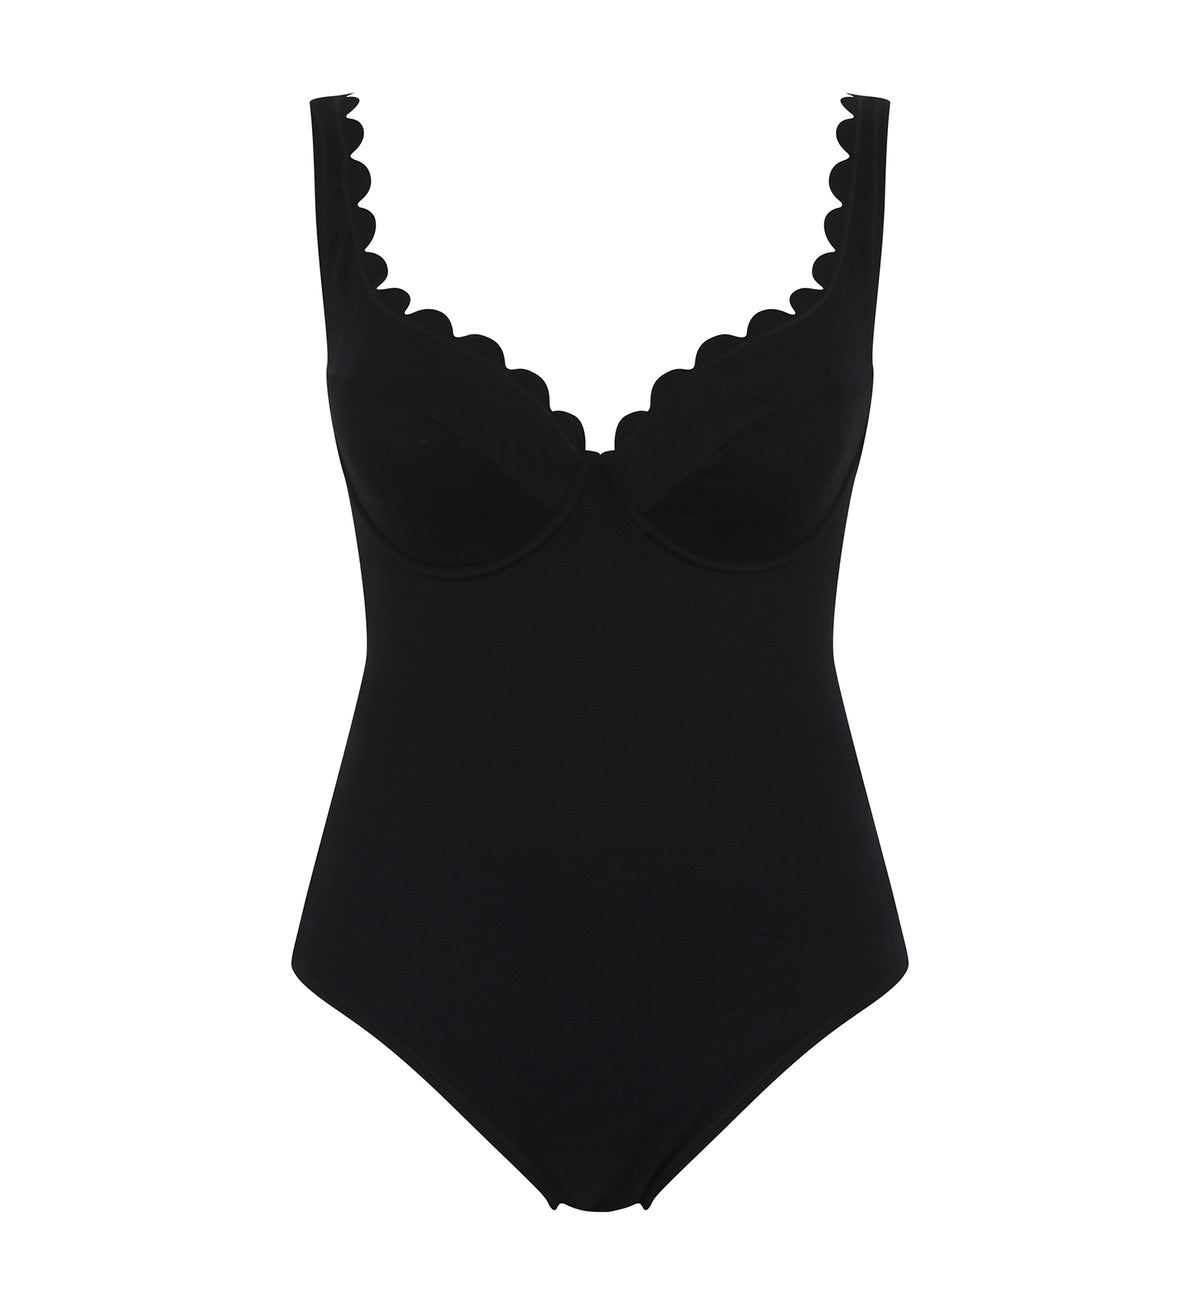 Panache Spirit Rita Plunge Underwire One Piece Swimsuit (SW1780),30F,Black - Black,30F